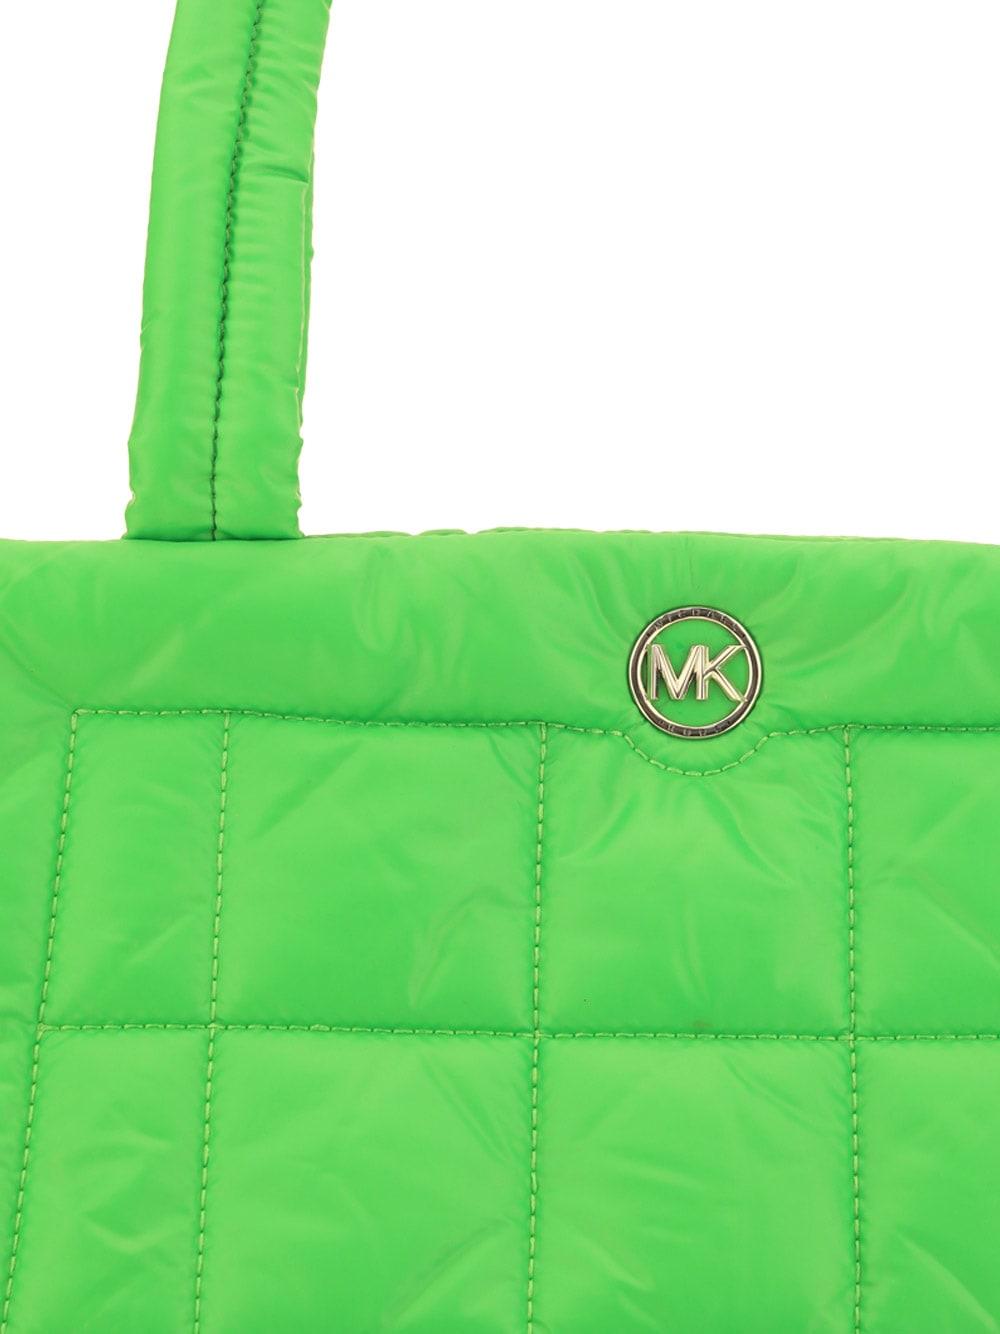 My olive green Michael Kors bag | Michael kors bag, Kor, Gorgeous bags